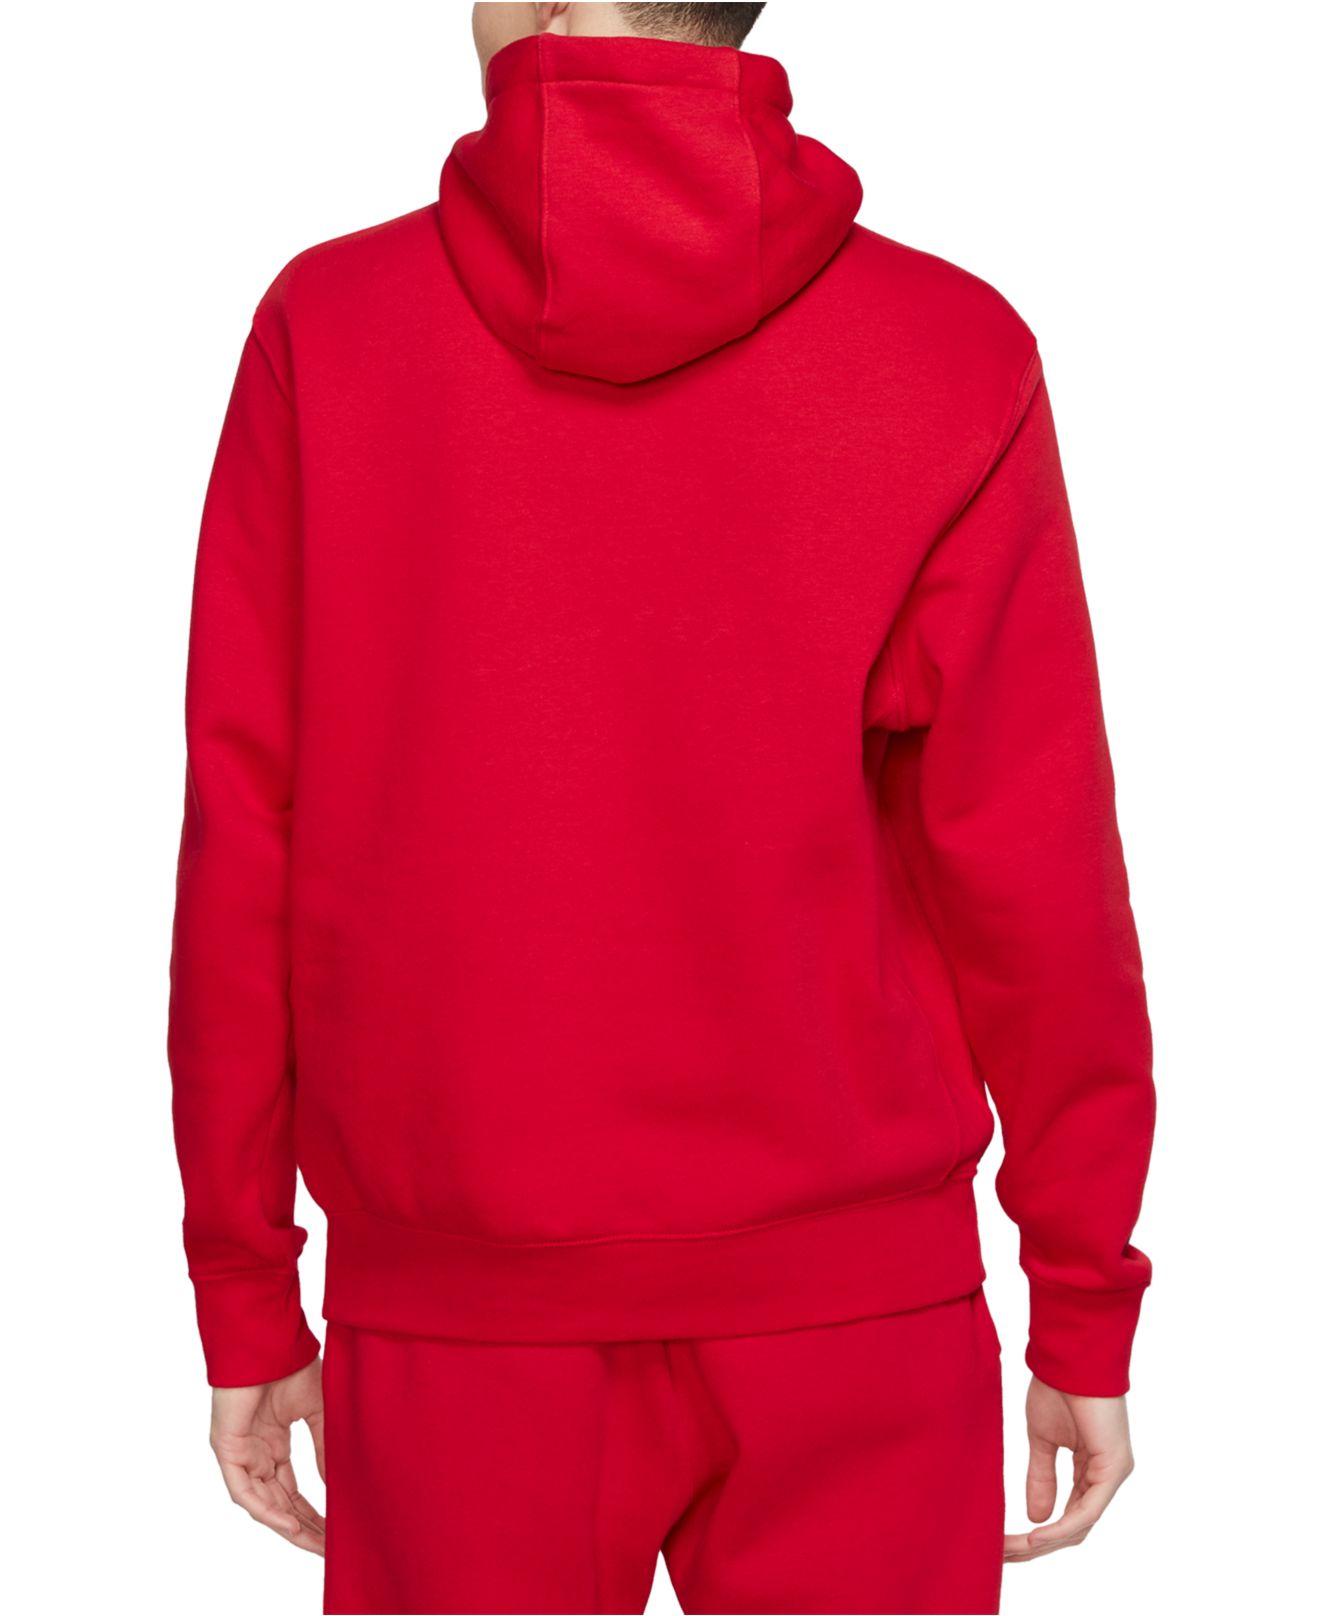 Nike Sportswear Club Fleece Hoodie in Red for Men - Lyst